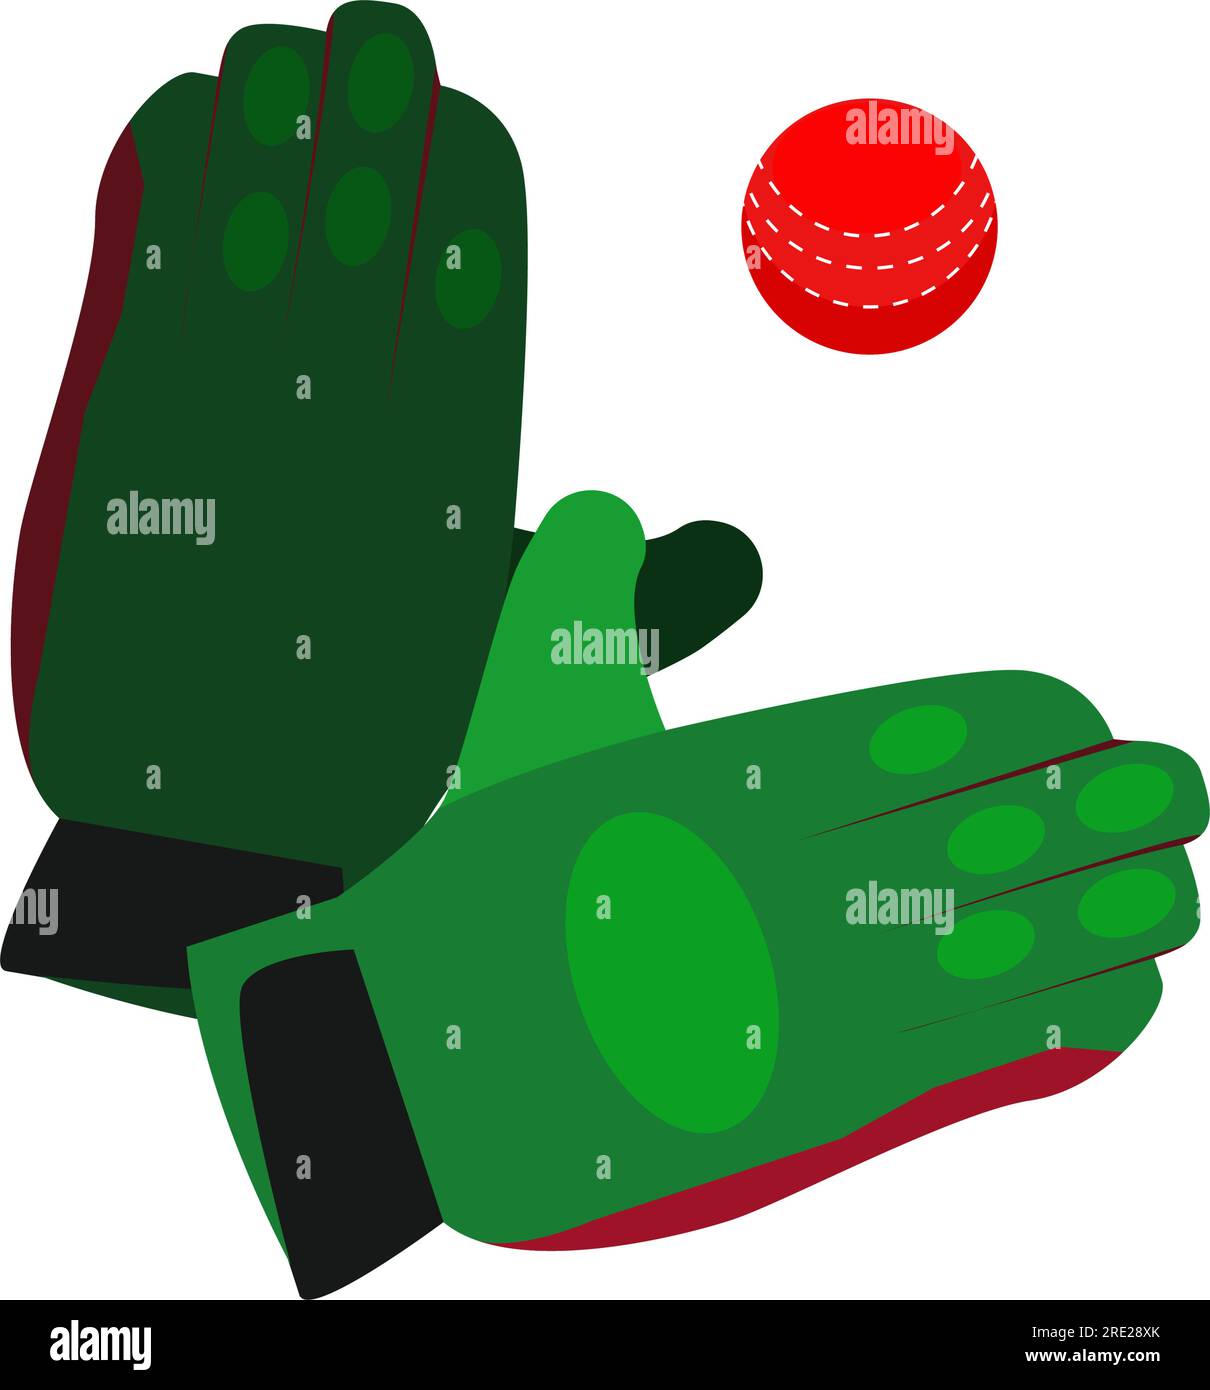 Baseball gloves illustration Stock Vector